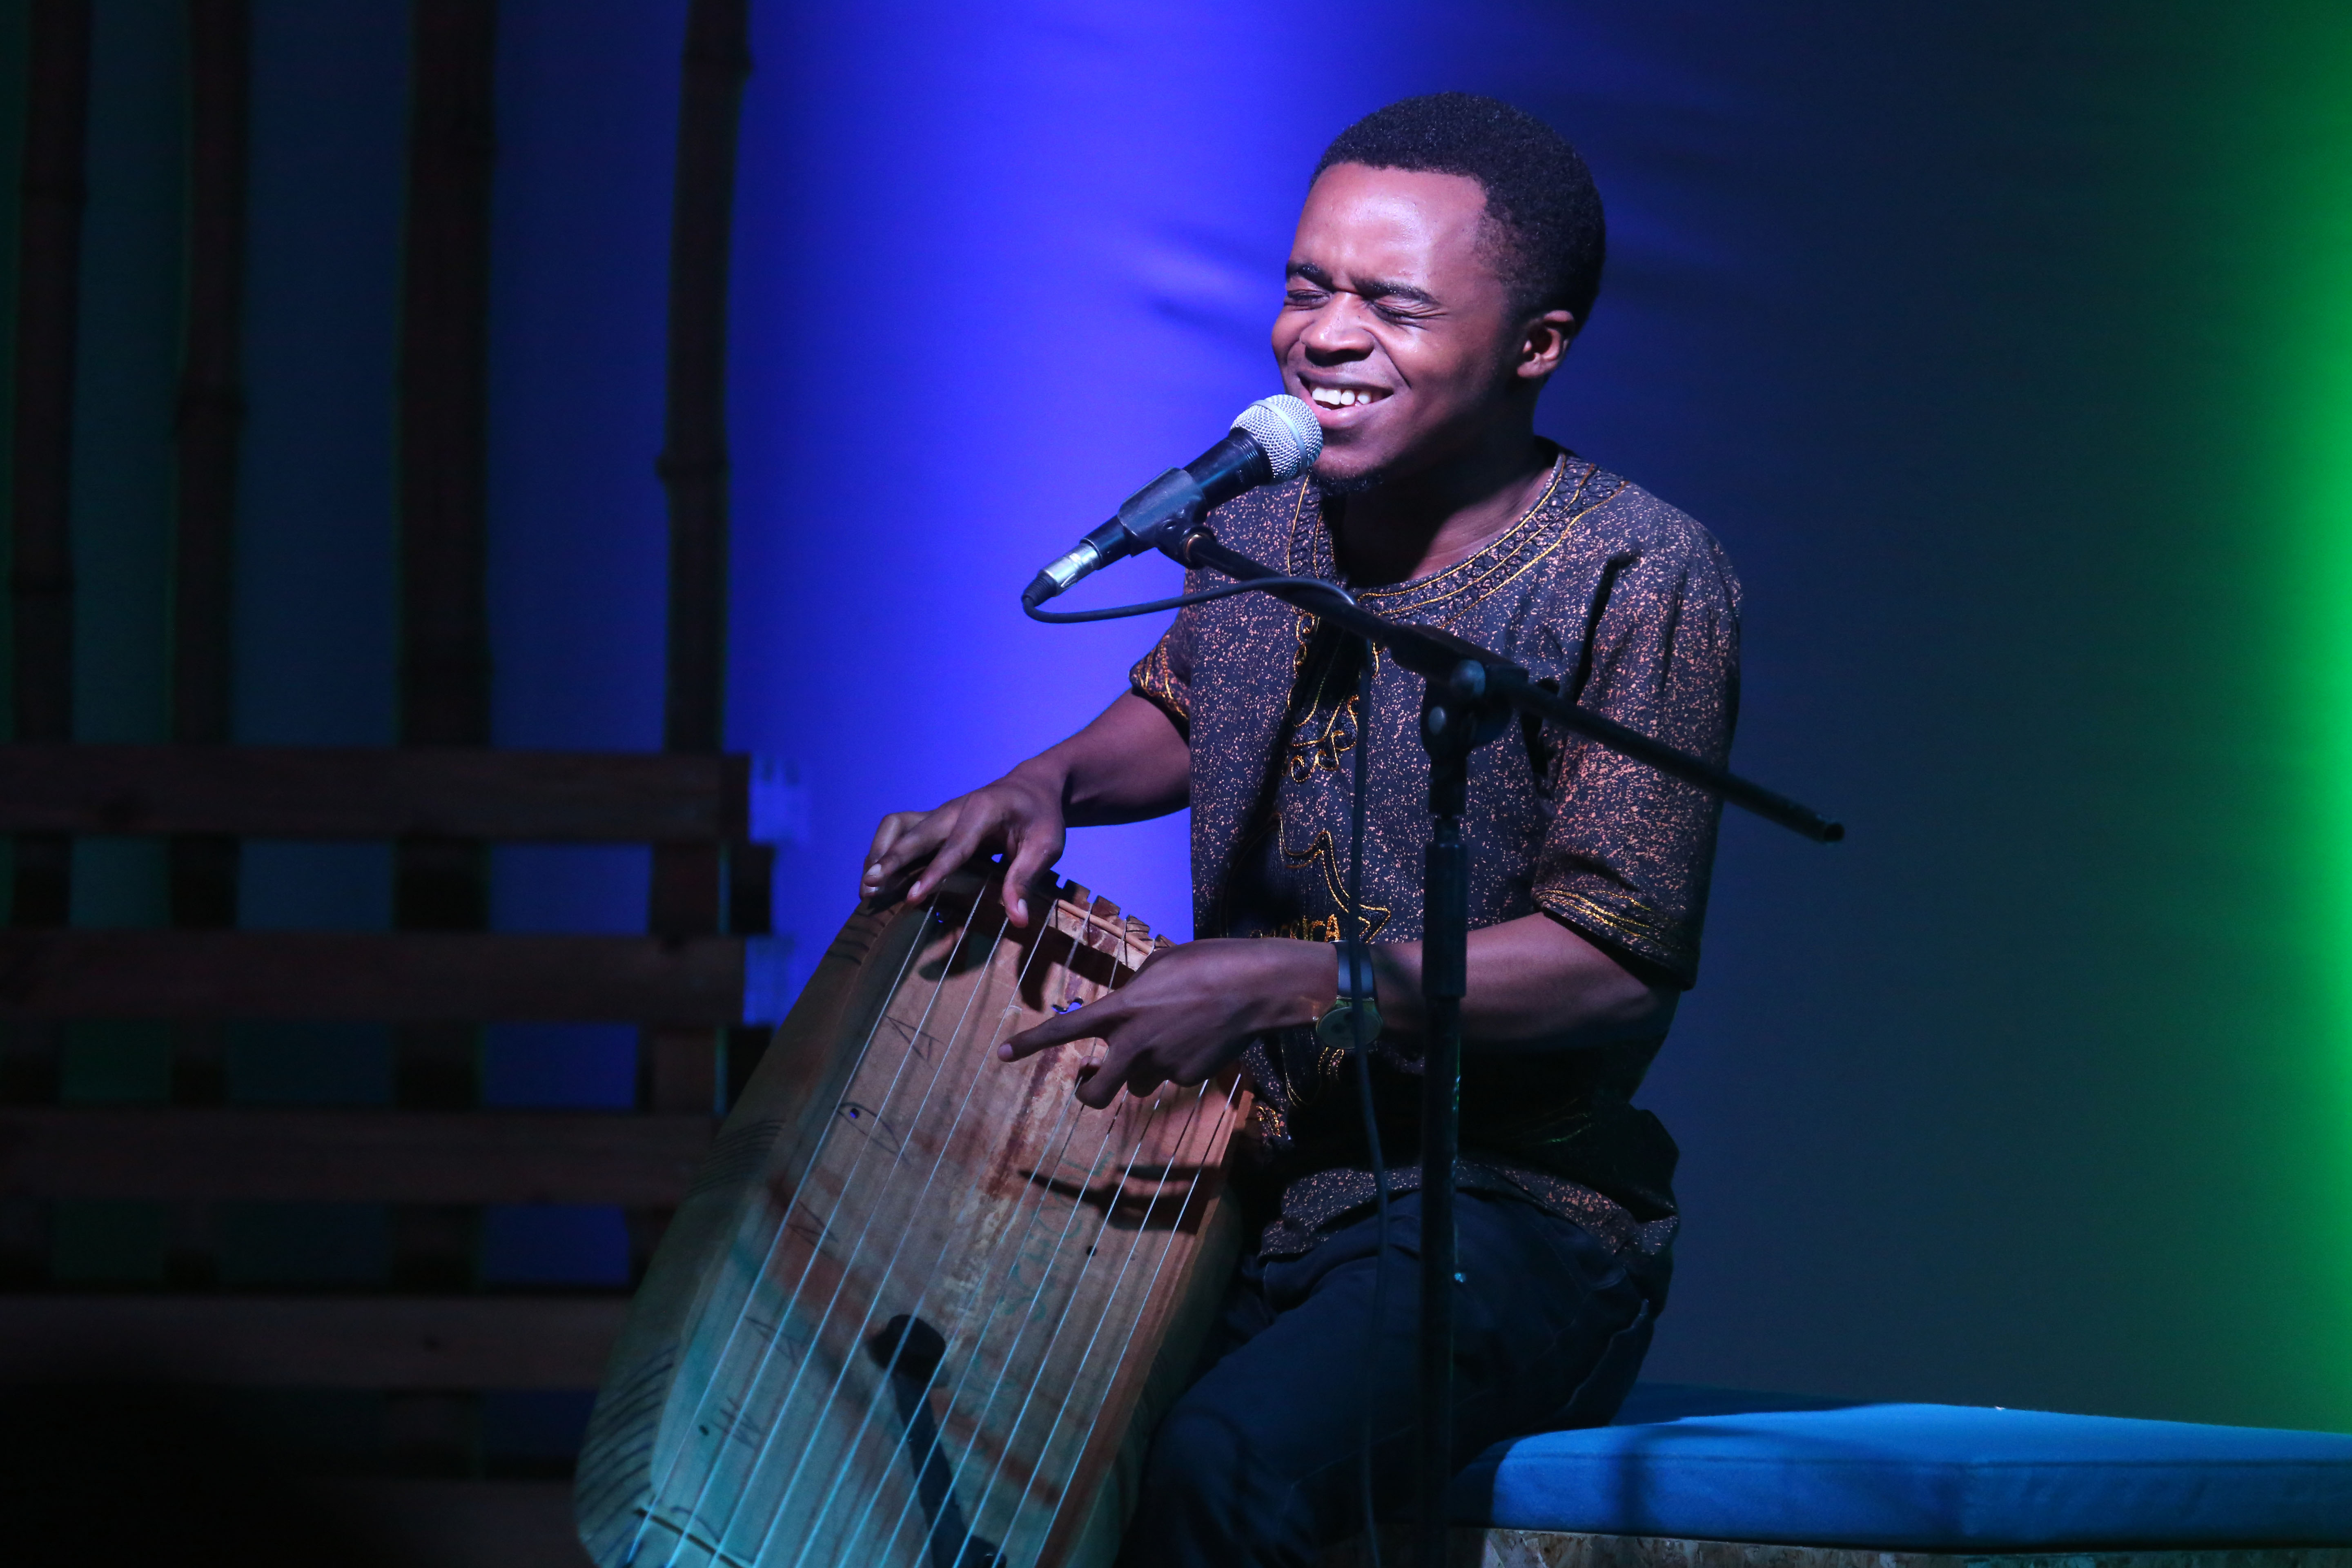 Rwandan Inanga player Deo Munyakazi entertained the audience during the concert on Saturday.